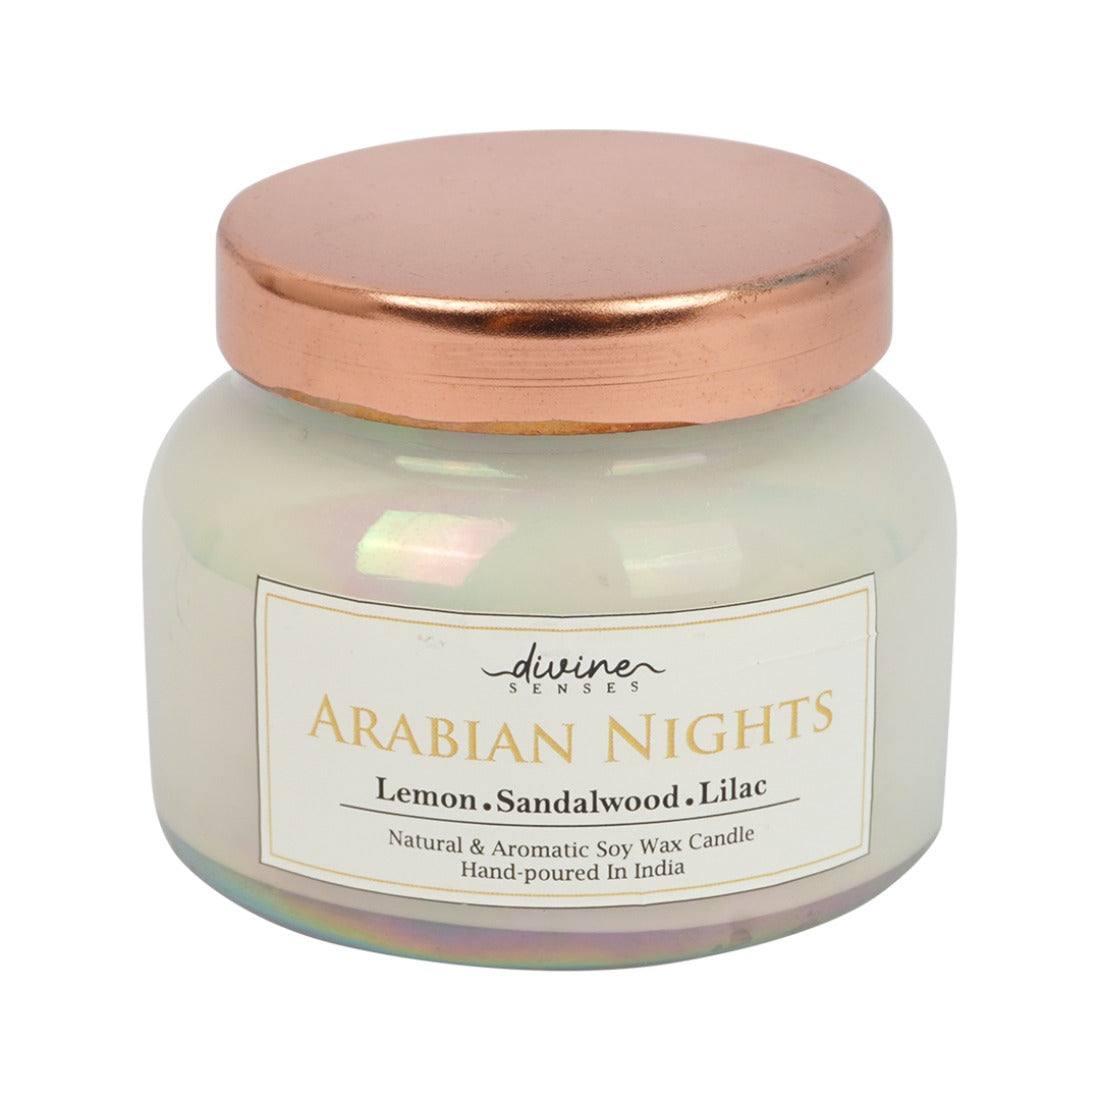 Divine Senses Arabian Nights Candle Jar